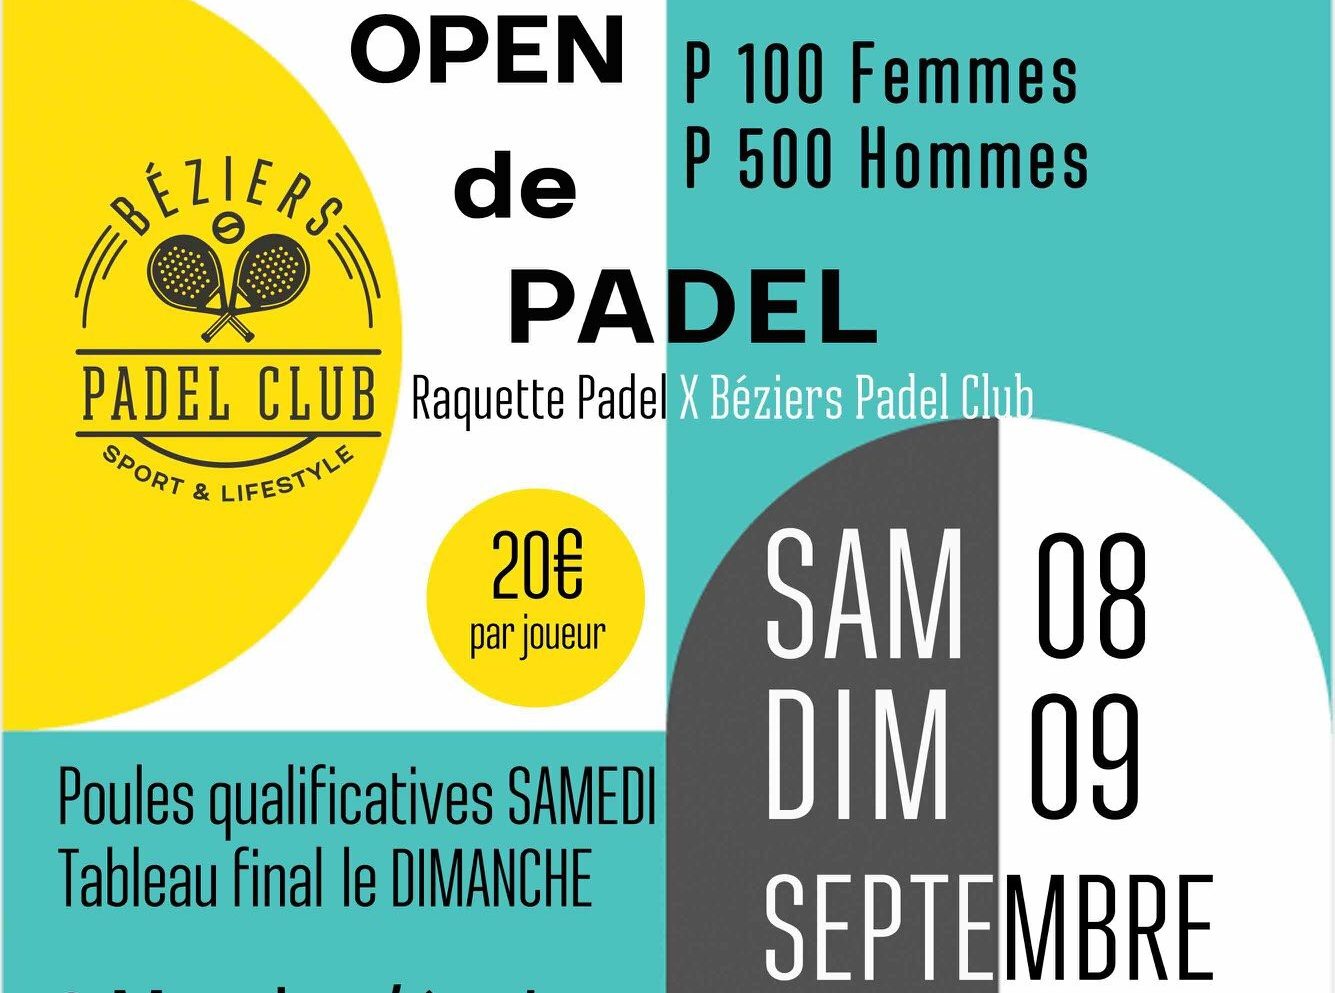 De Béziers Padel Club biedt zijn eerste grote toernooi aan padel